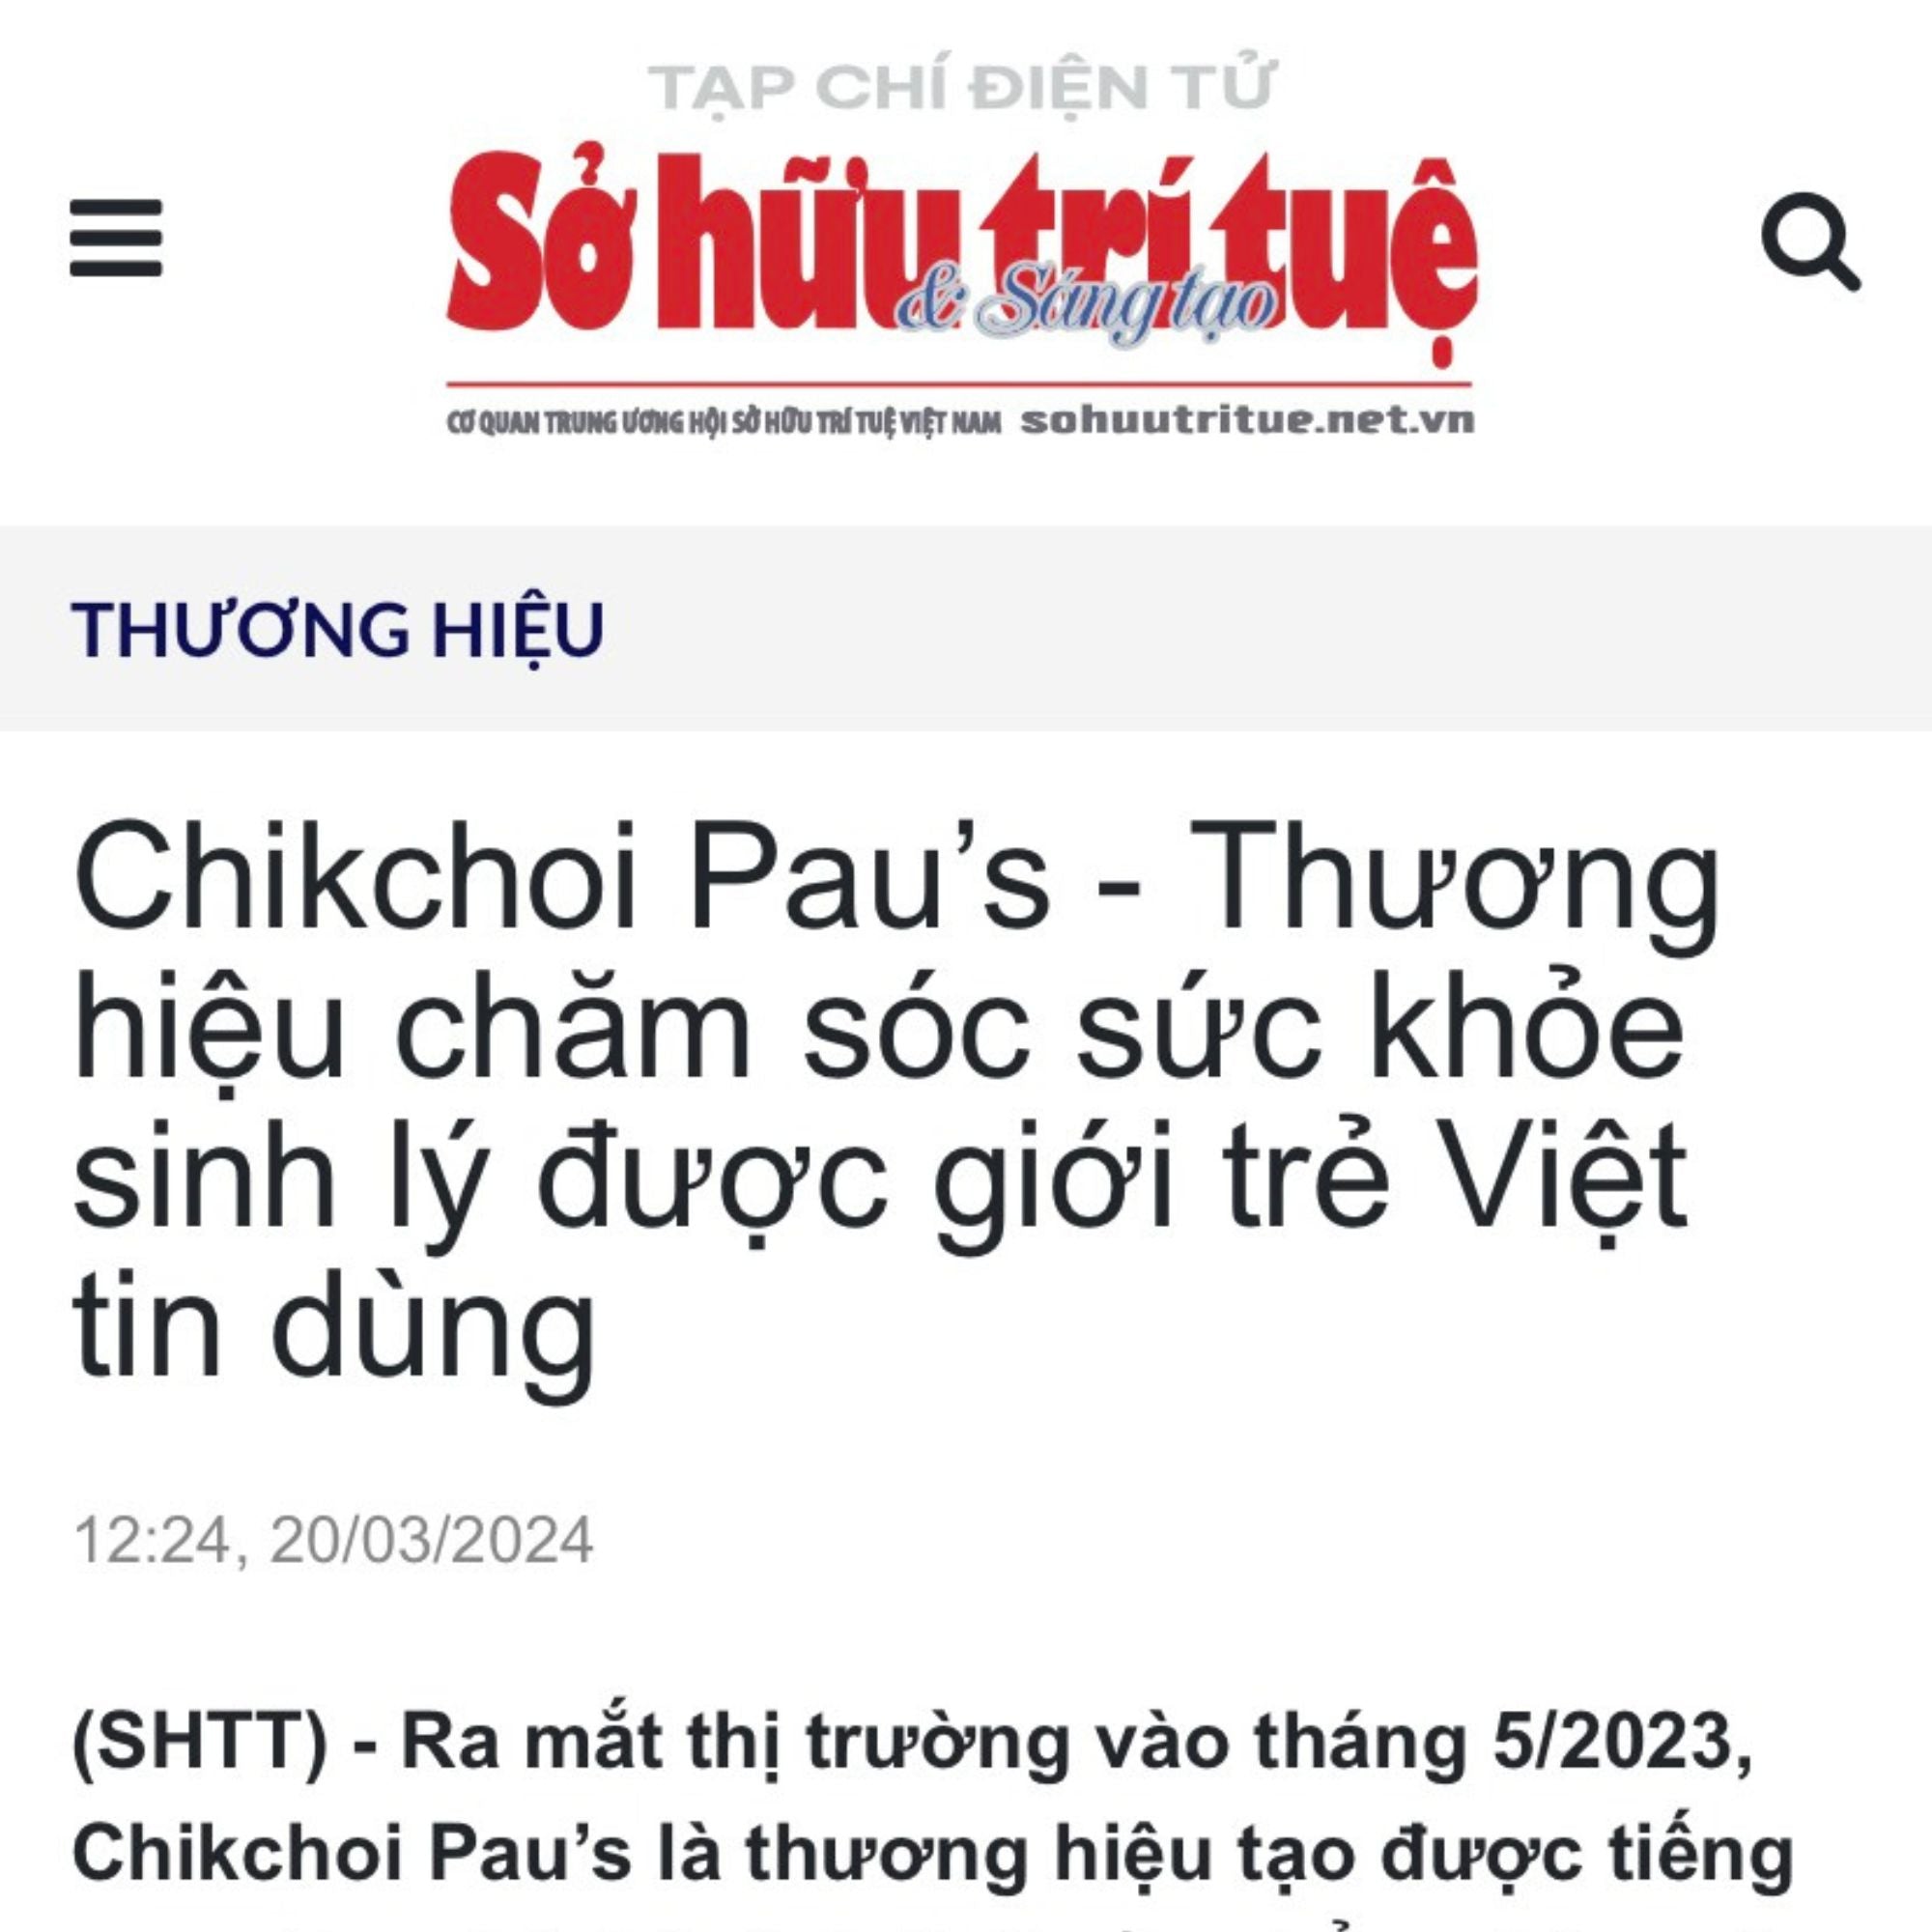 Chikchoi Pau’s - Thương hiệu chăm sóc sức khỏe sinh lý được giới trẻ Việt tin dùng